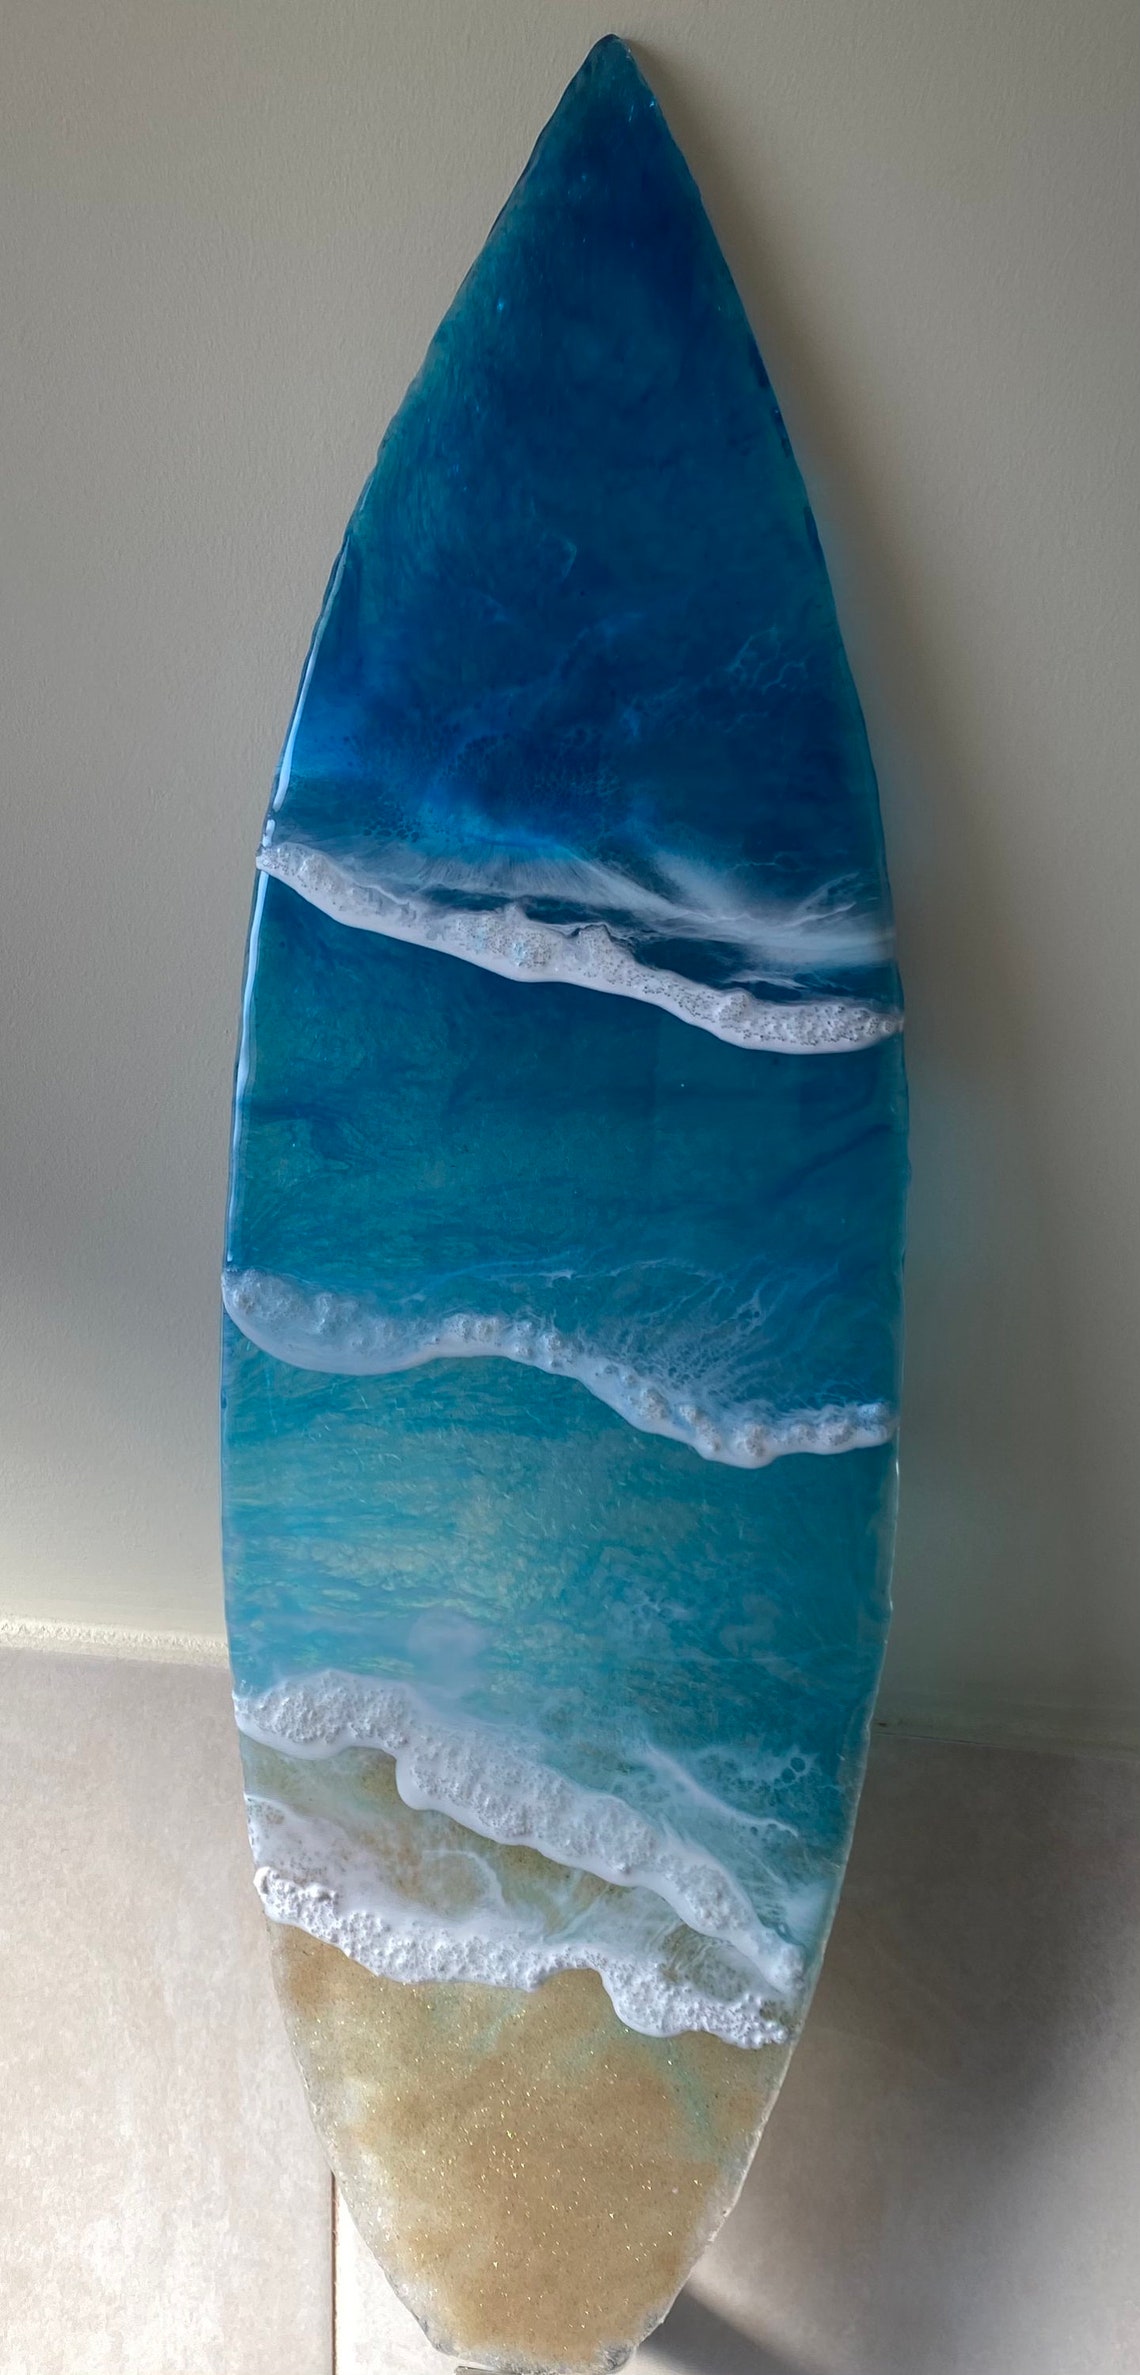 Resin Surfboard/Resin Wall Art/Resin Art/Glass Art/Coastal | Etsy